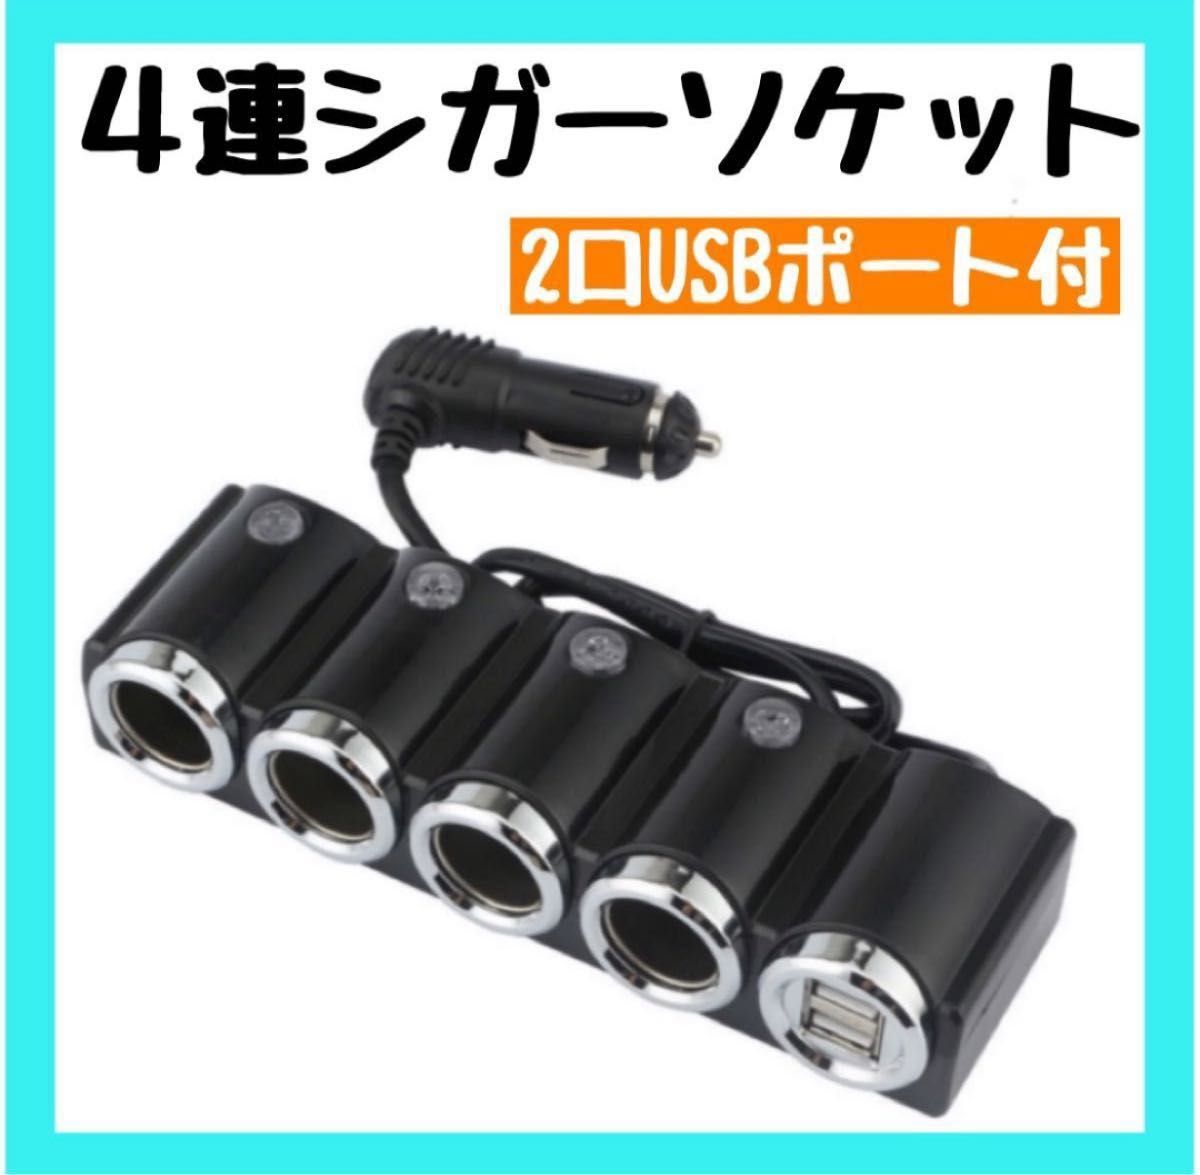 ラスト1点【4連シガーソケット】車載充電器 カーチャージャー USB 分配器  2USBポート DC12V 充電器 車 便利  